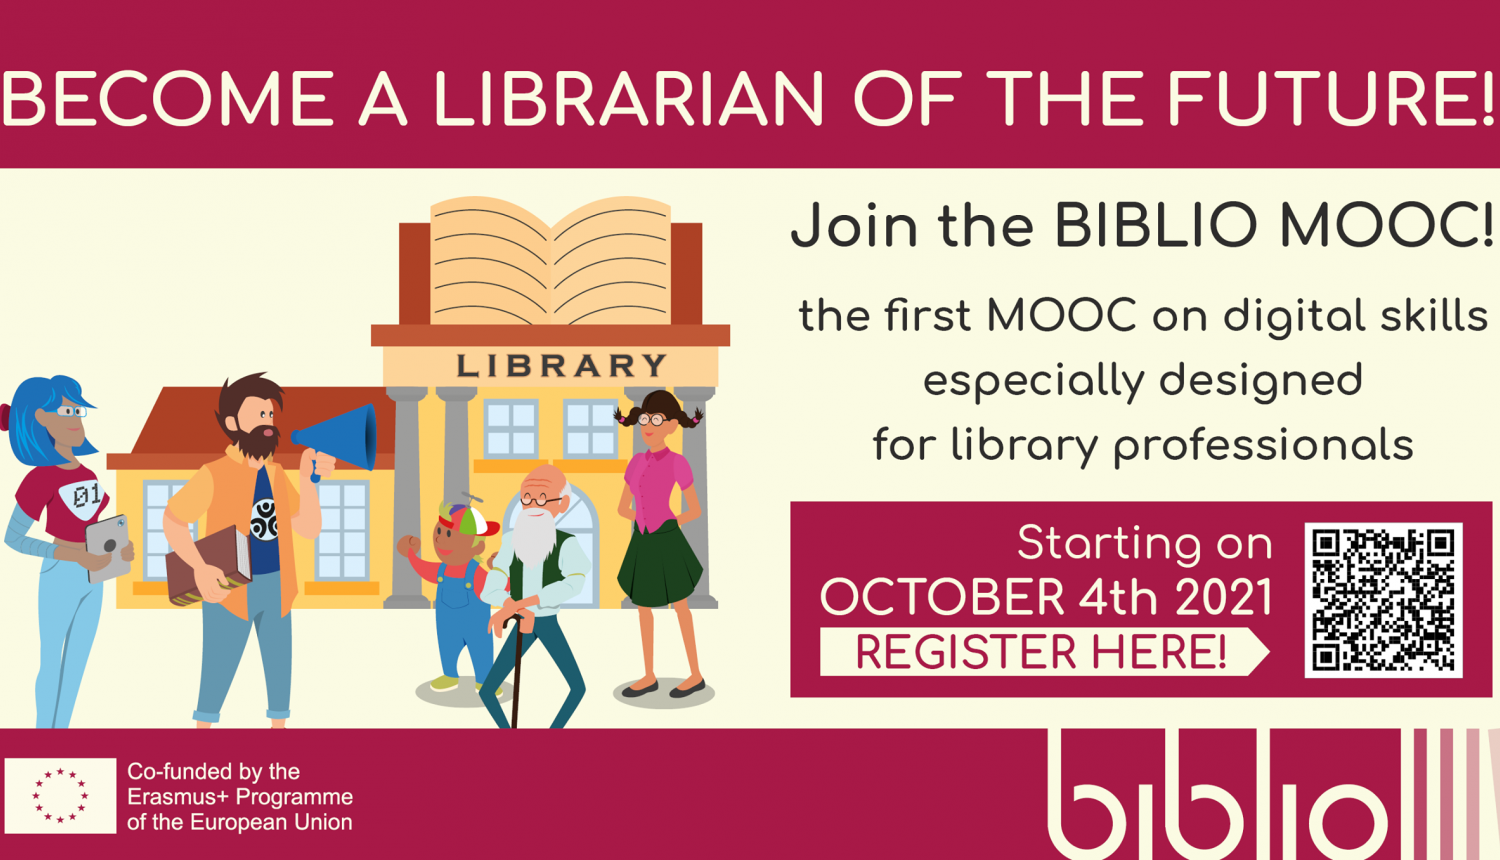 Zīmējums ar bibliotēku fonā un priekšplānā aicinājums ar QR kodu pieteikties MOOC mācībām